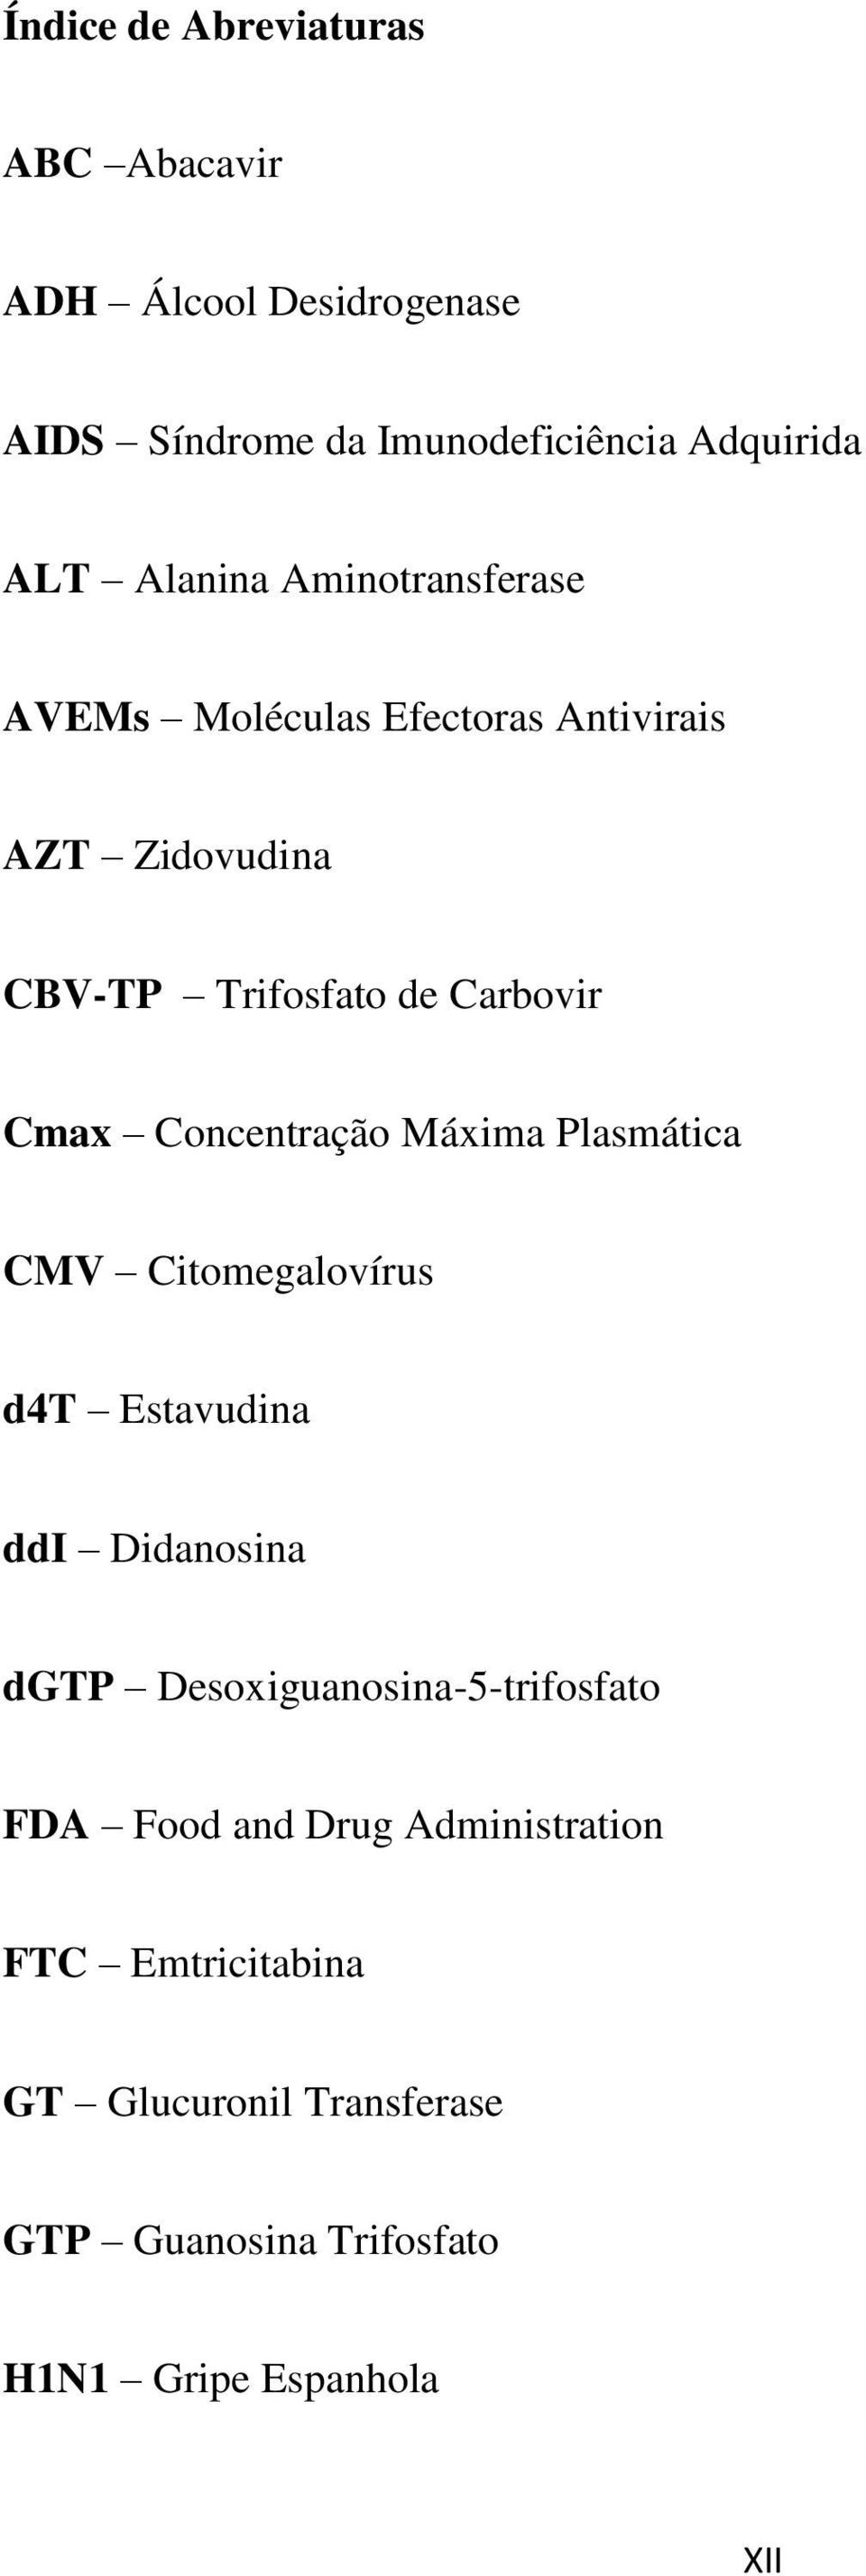 Concentração Máxima Plasmática CMV Citomegalovírus d4t Estavudina ddi Didanosina dgtp Desoxiguanosina-5-trifosfato